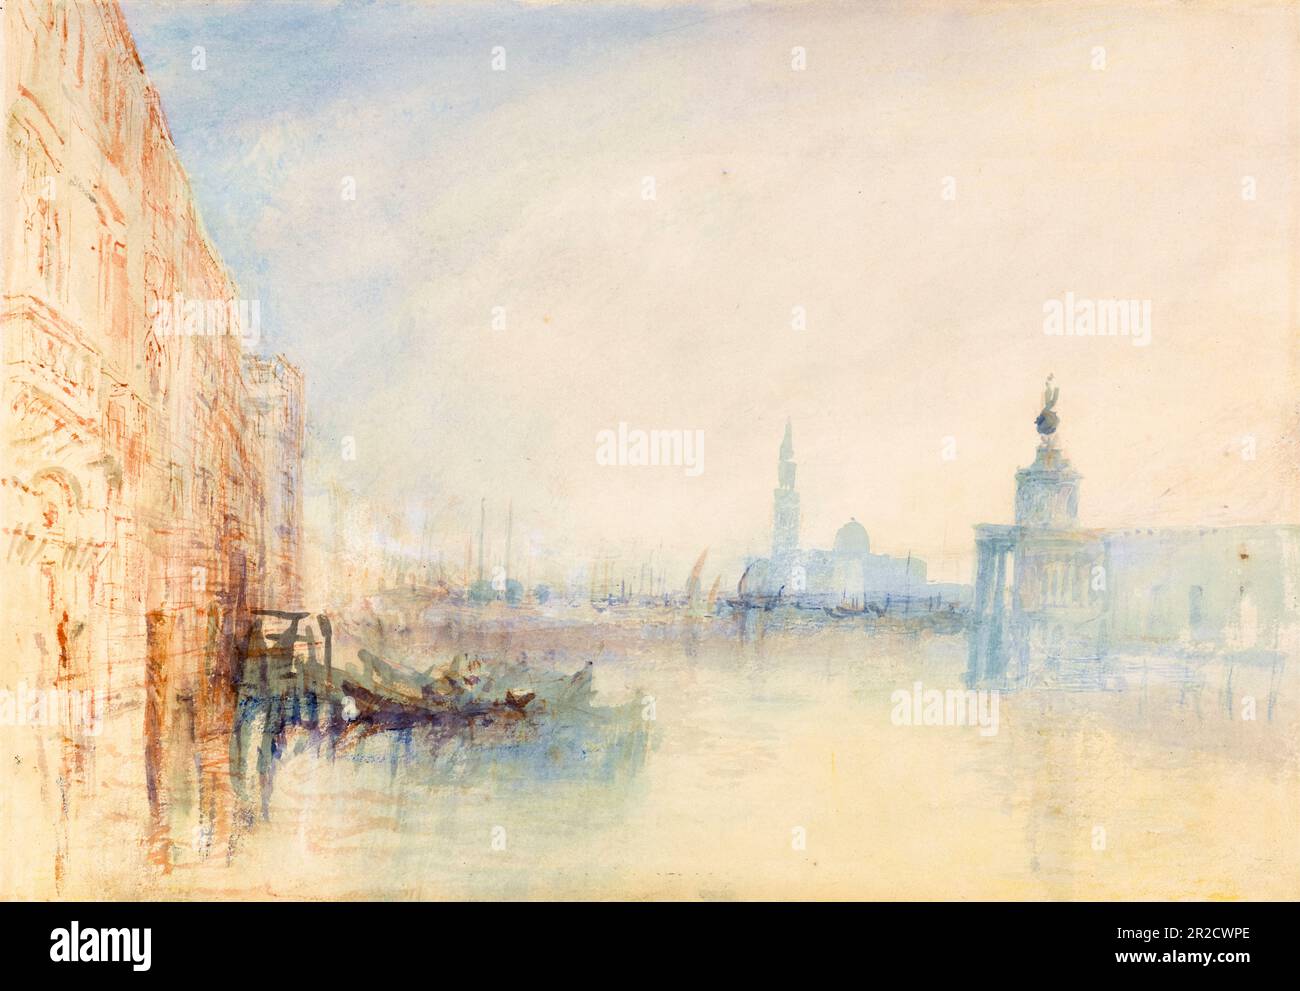 JMW Turner, Venise, l'embouchure du Grand Canal, peinture vers 1840 Banque D'Images